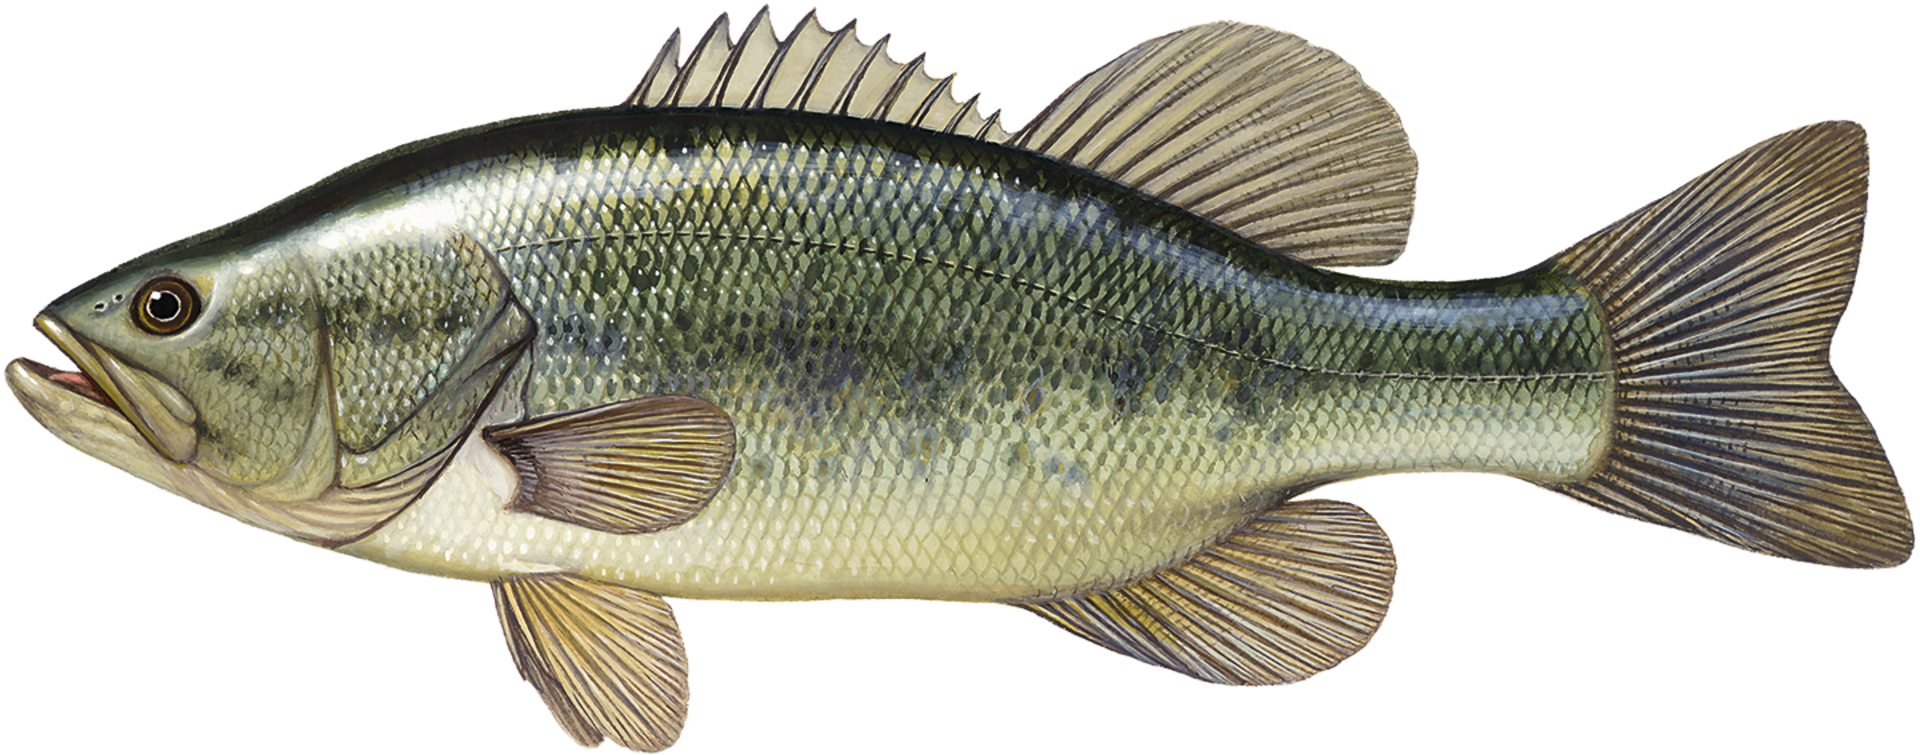  Largemouth Bass (Micropterus salmoides): Beim Forellenbarsch oder grossmäuligen Schwarzbarsch erstreckt sich die Mundspalte über den hinteren Rand des Auges. Kopf und Rücken sind hellgrün bis olivgrün.  